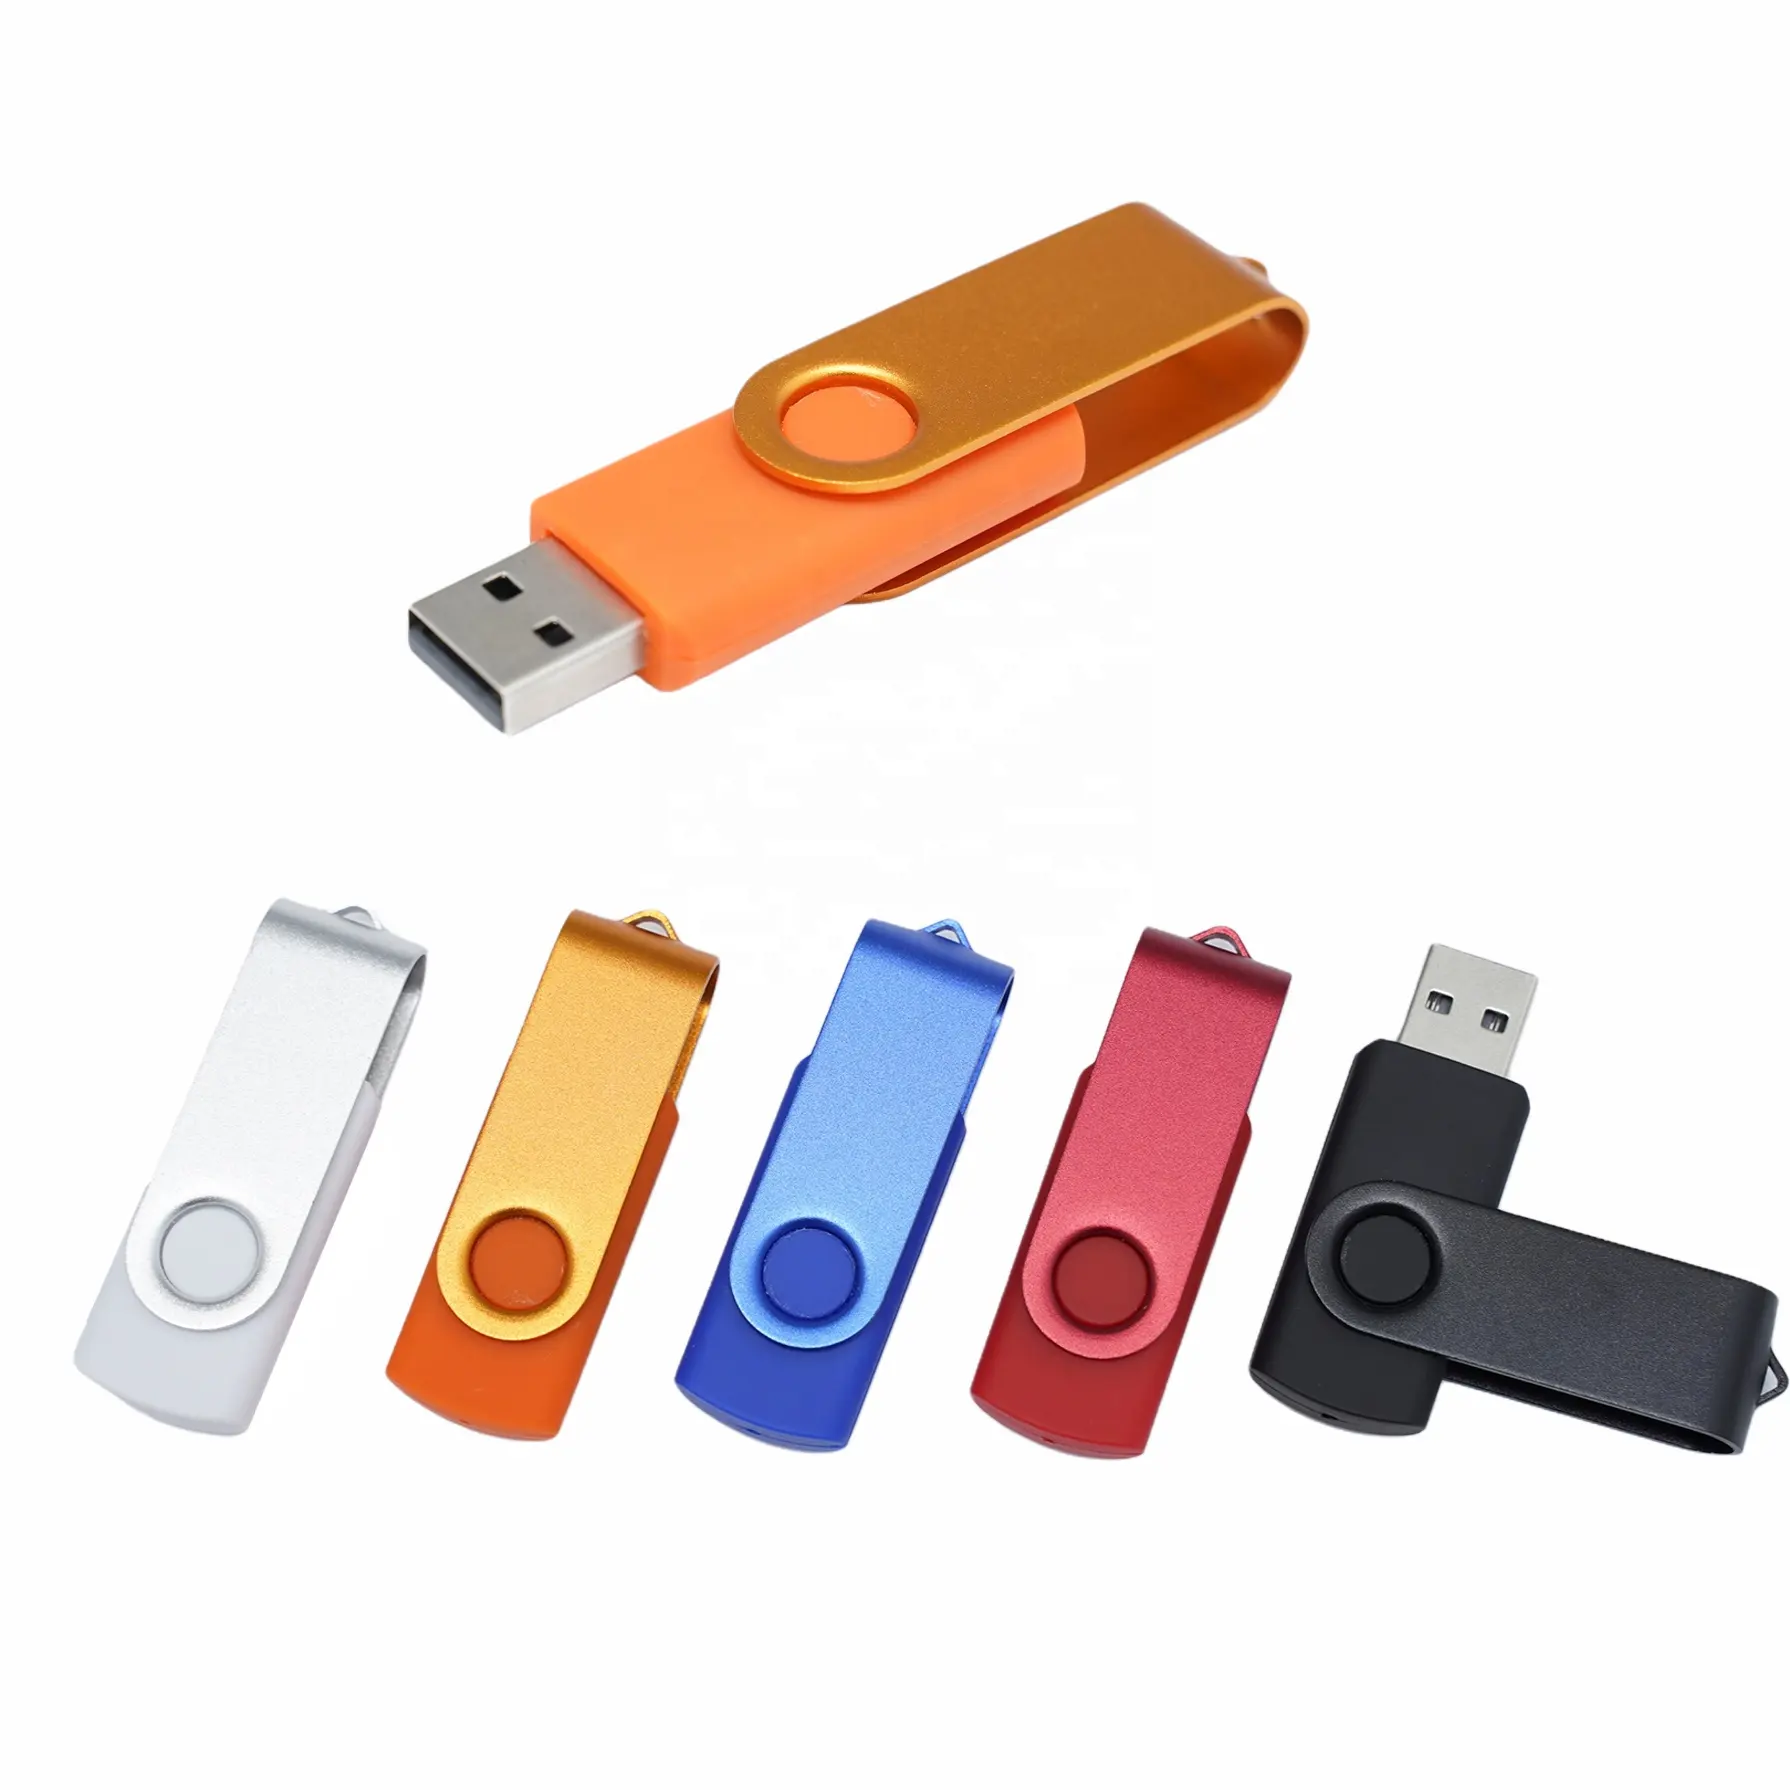 Fabbrica di sconto prezzi più bassi classic girevole chiavette usb di trasporto del commercio all'ingrosso 2gb 4gb 8gb 16gb 32gb 64gb più colori usb flash drive